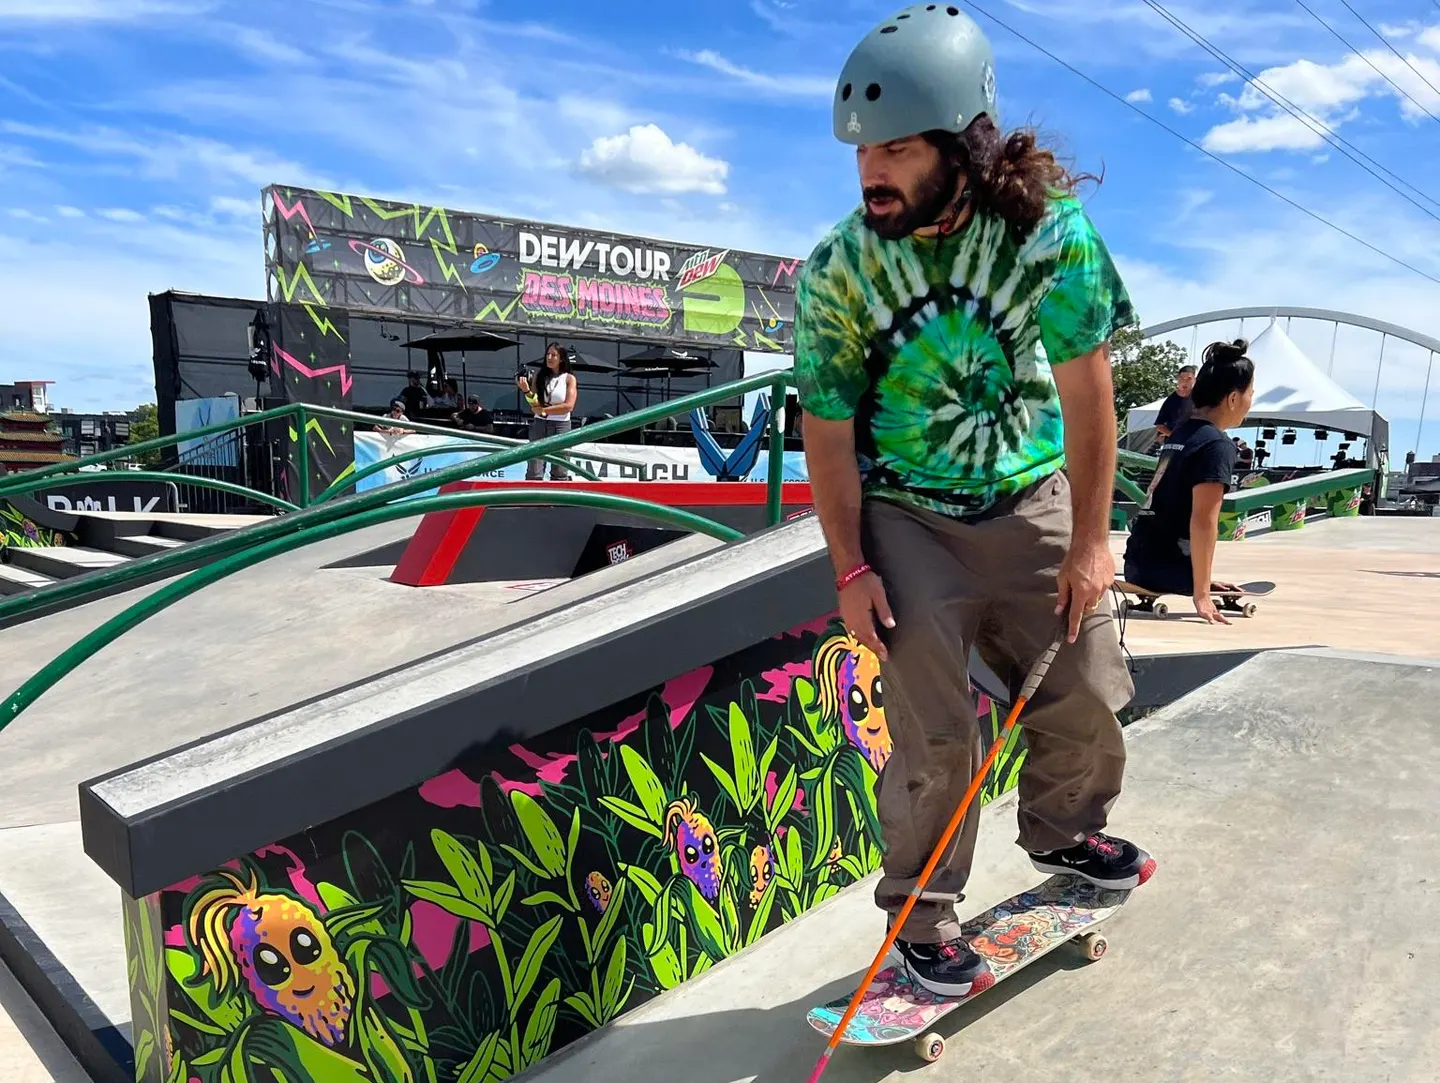 Anthony Ferraro skateboards at Dew Tour